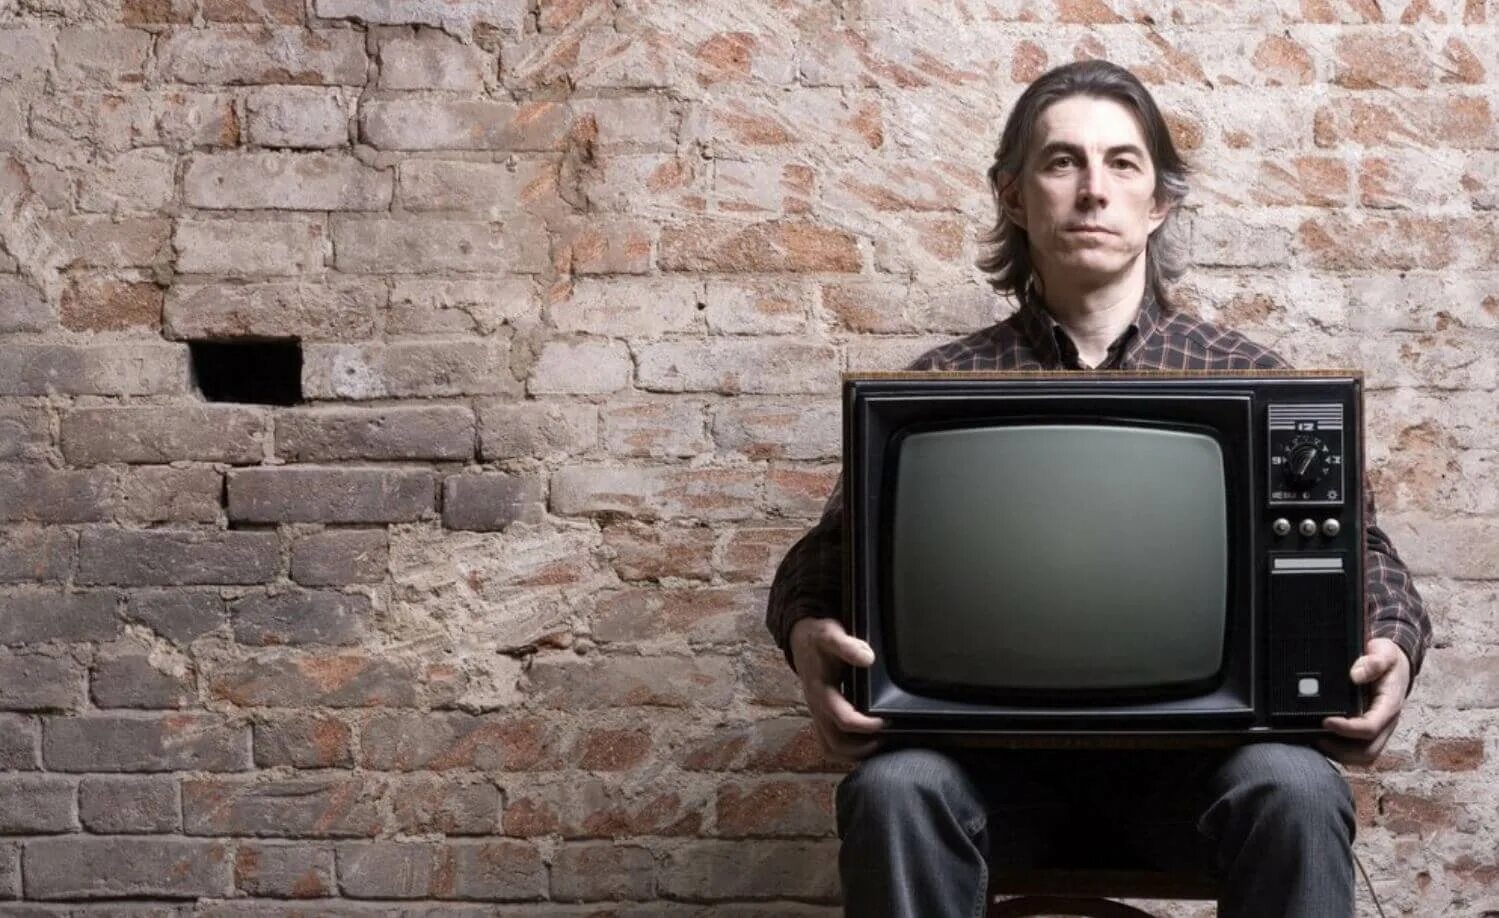 Найден новый телевизор. Человек телевизор. Фотосессия с телевизором. Человек держит телевизор. Ручной телевизор.